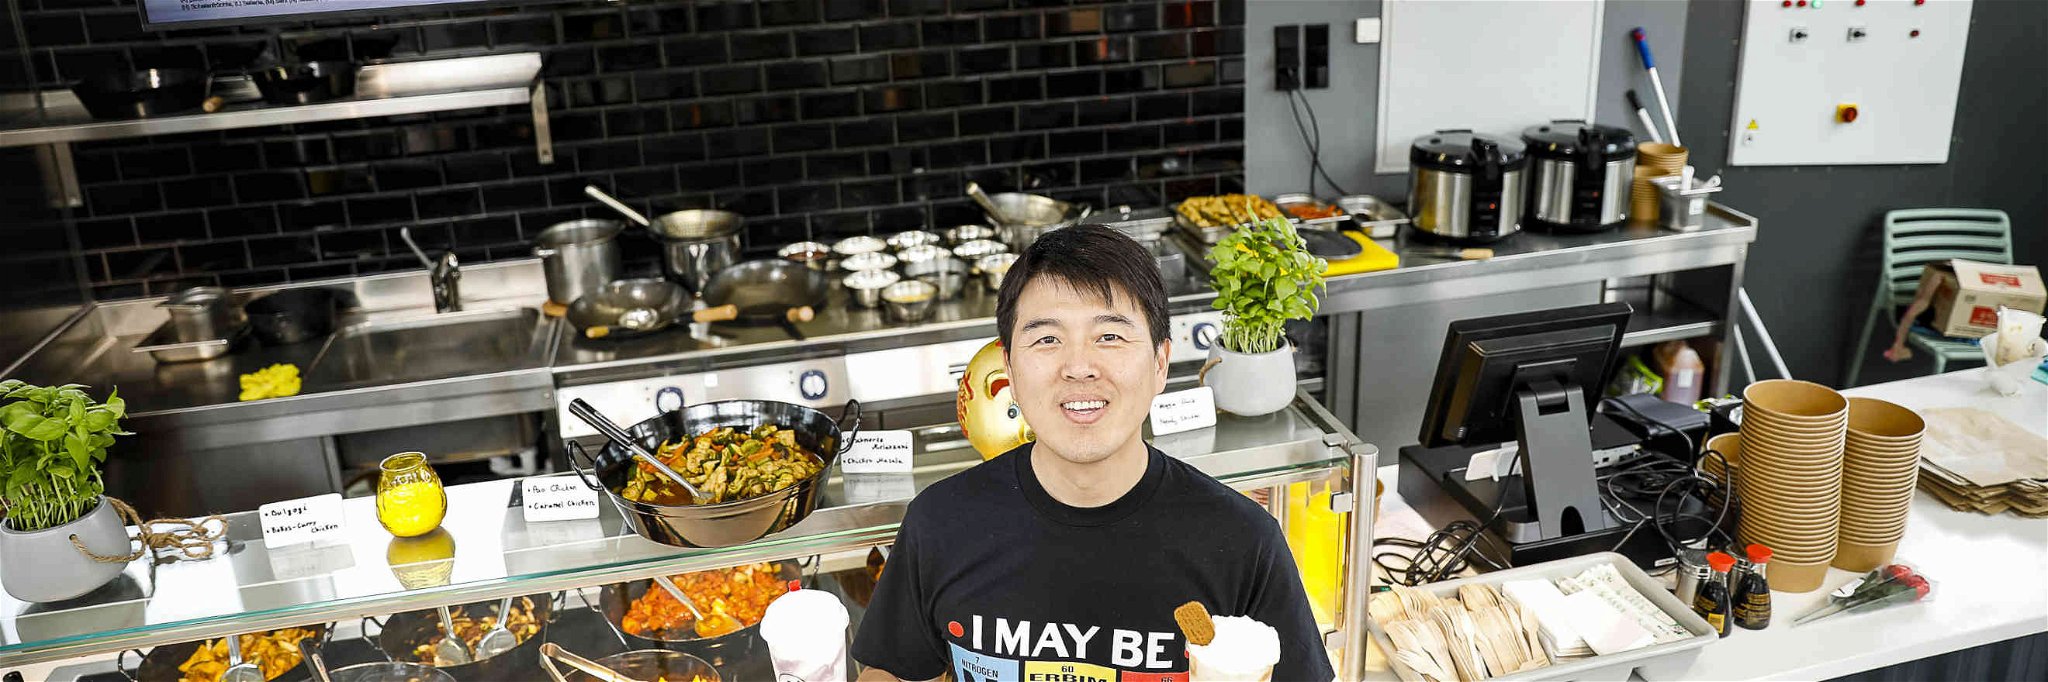 Der Grazer Gastro-Unternehmer, Thomas Liu, in seiner neuesten Gastronomie.